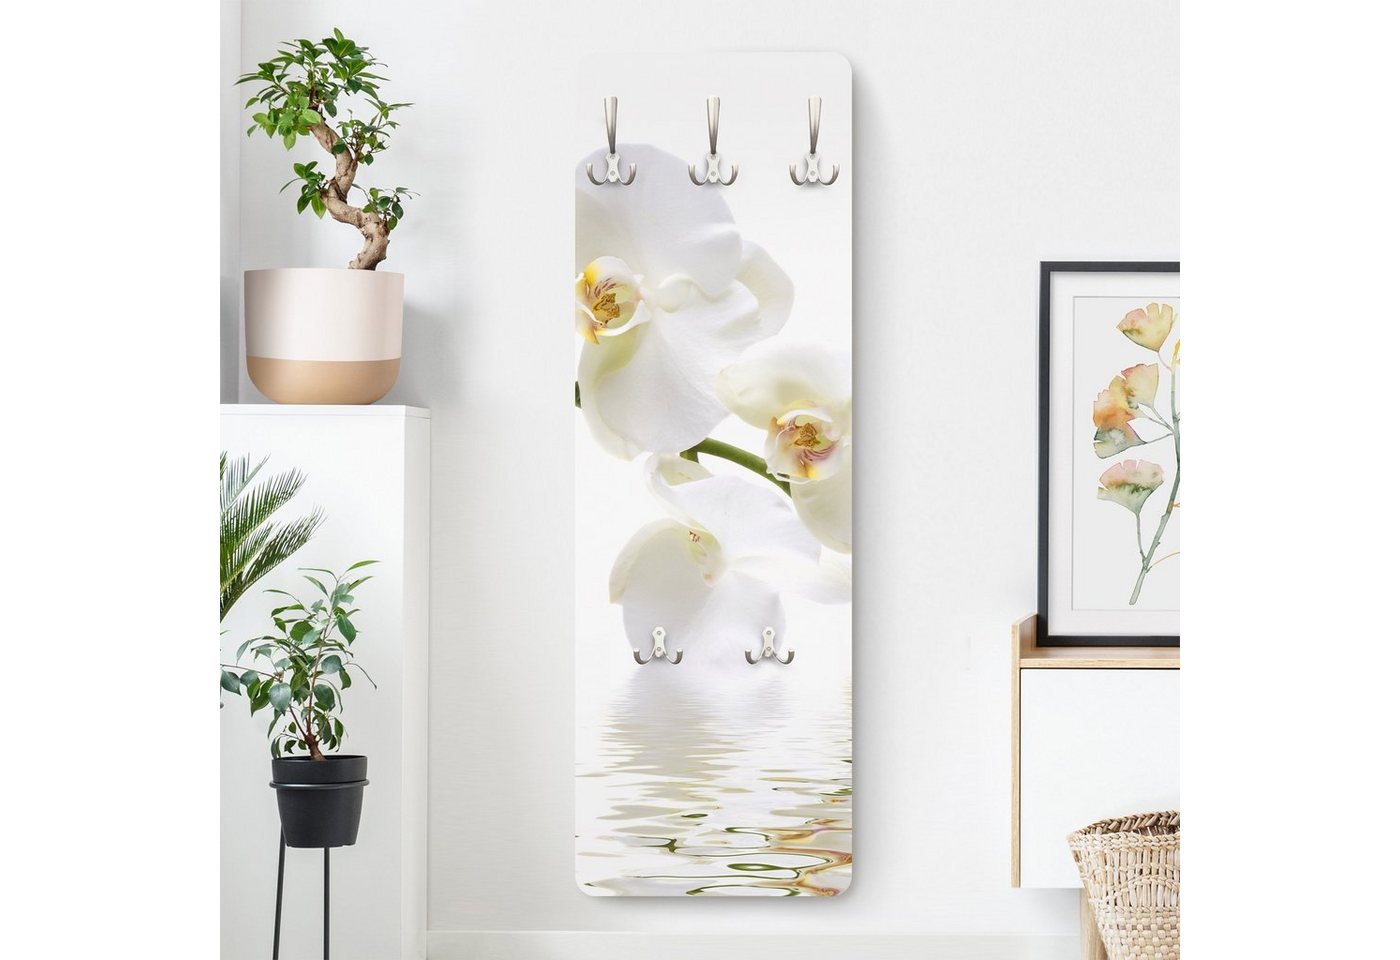 Bilderdepot24 Garderobenpaneel Design Blumen Floral White Orchid Waters (ausgefallenes Flur Wandpaneel mit Garderobenhaken Kleiderhaken hängend), moderne Wandgarderobe - Flurgarderobe im schmalen Hakenpaneel Design von Bilderdepot24